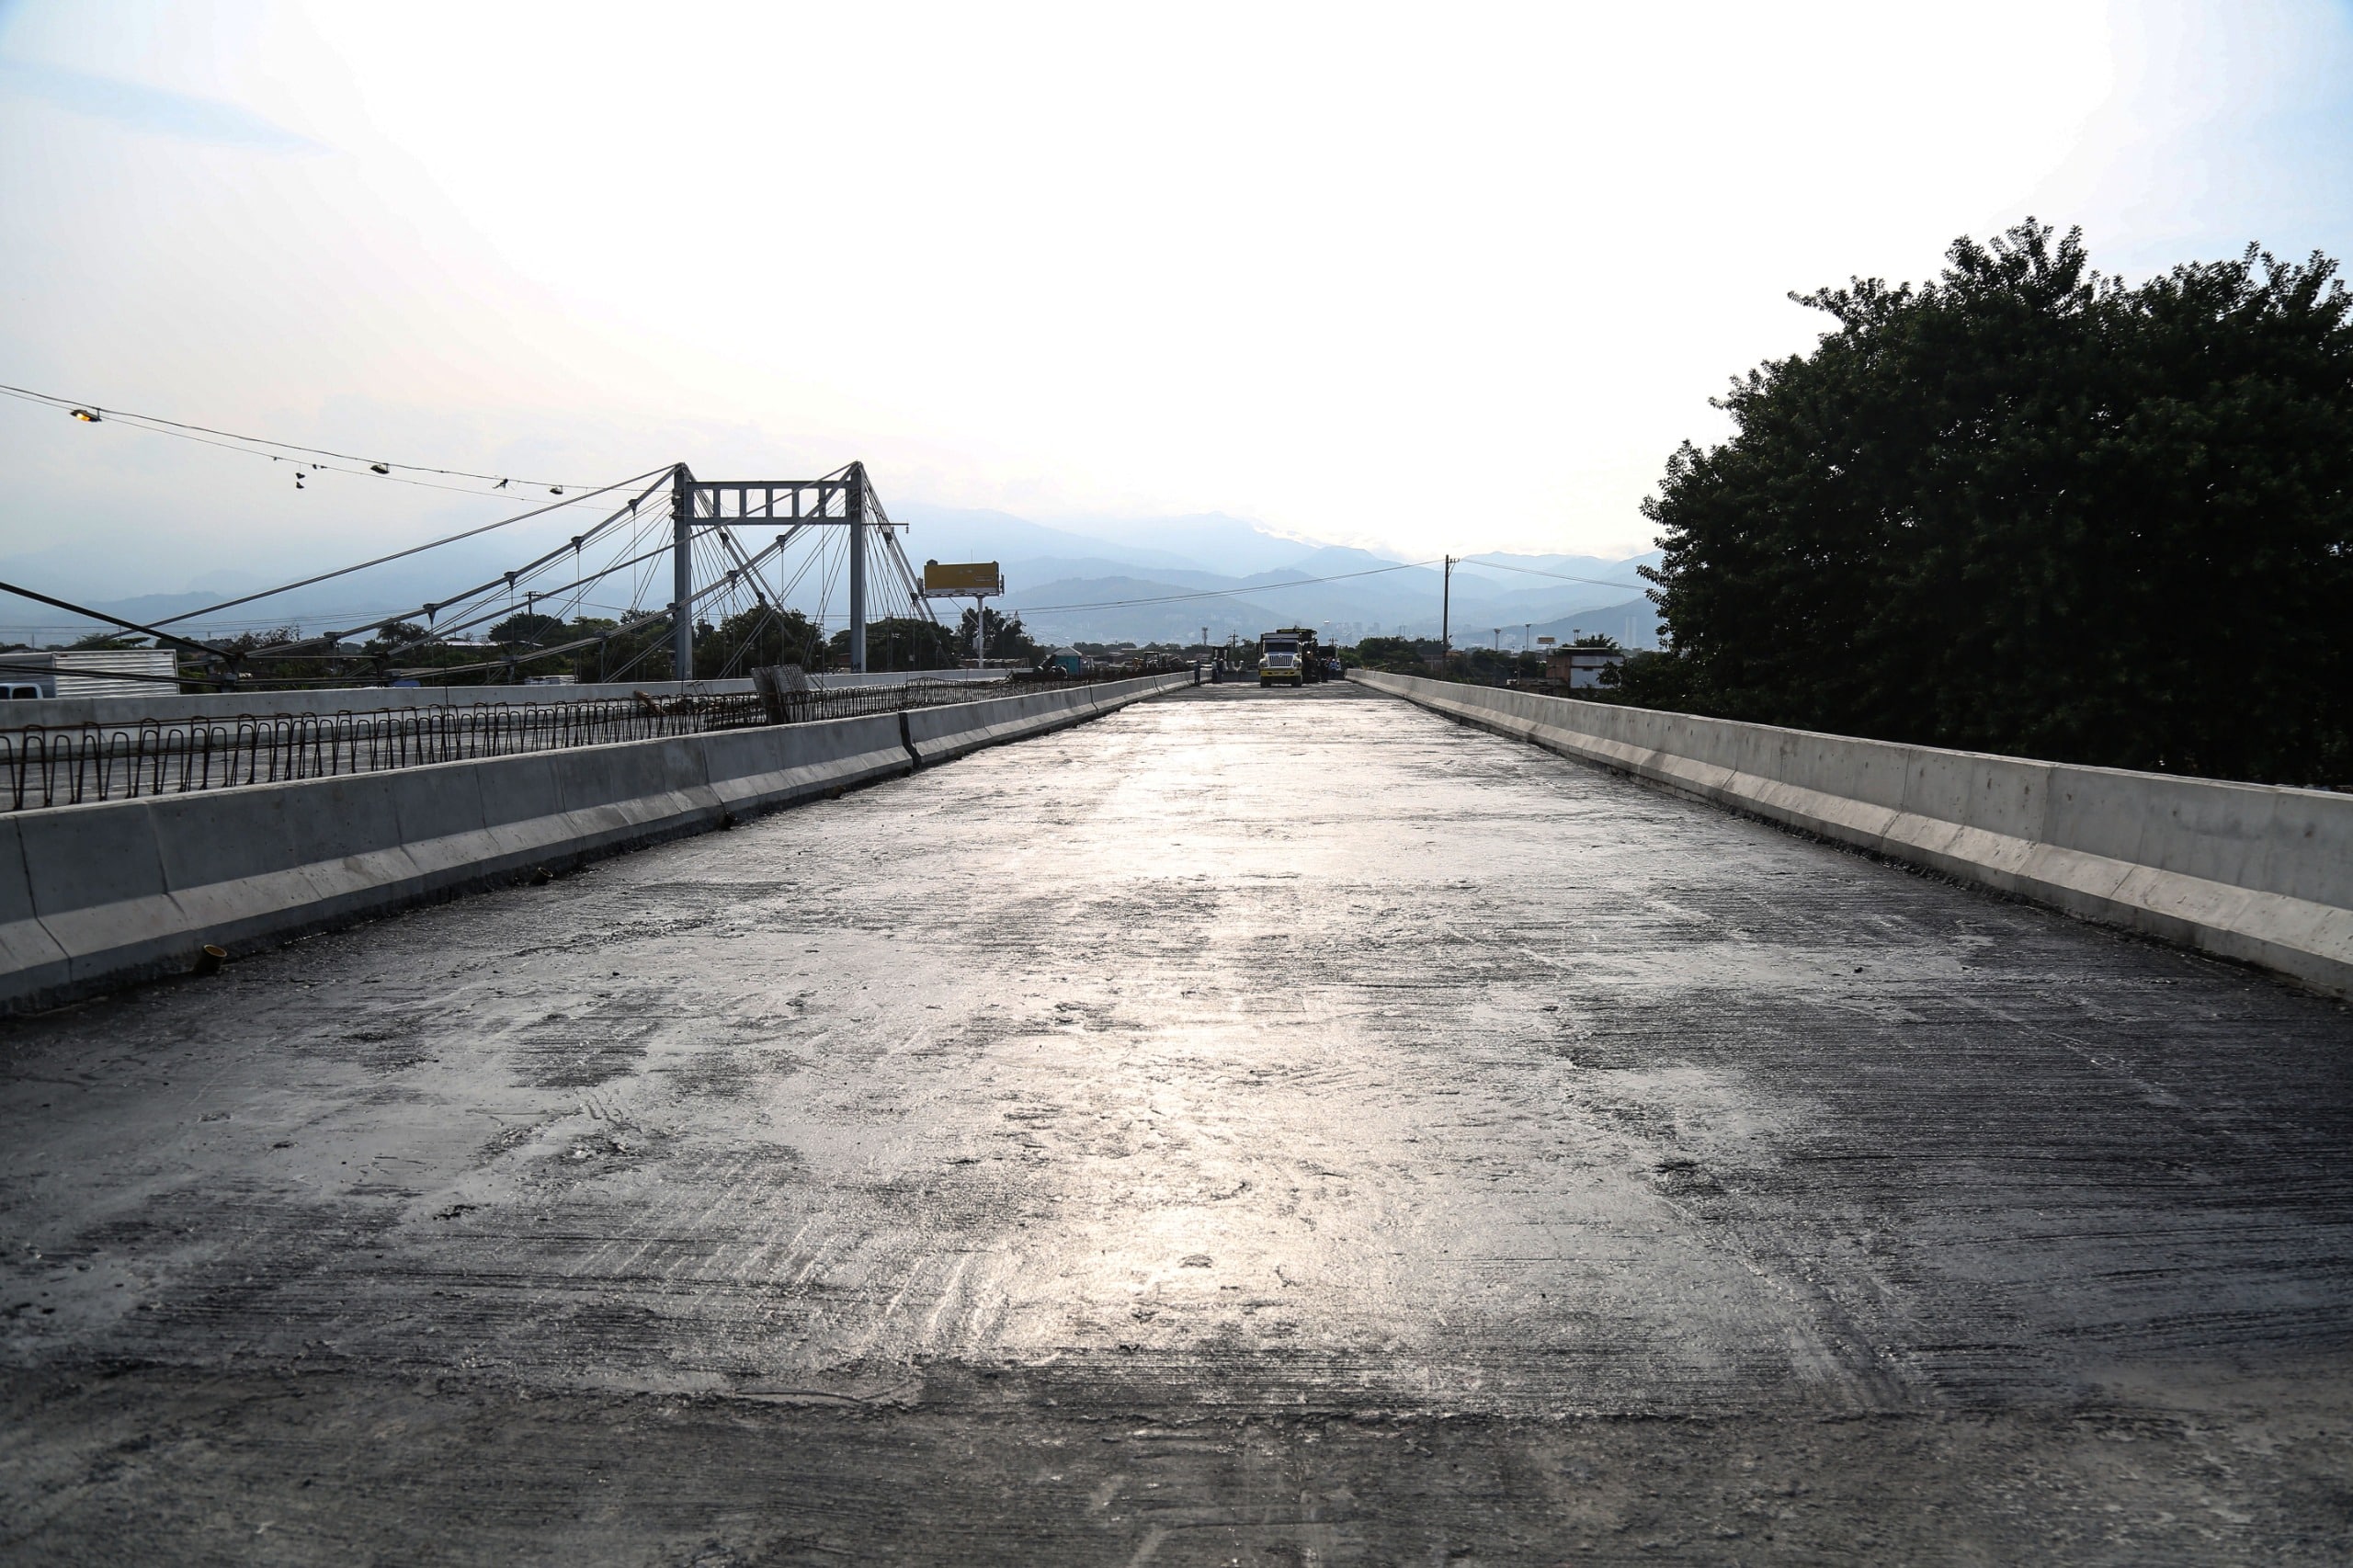 Inició la instalación del asfalto en la calzada norte del nuevo puente de Juanchito